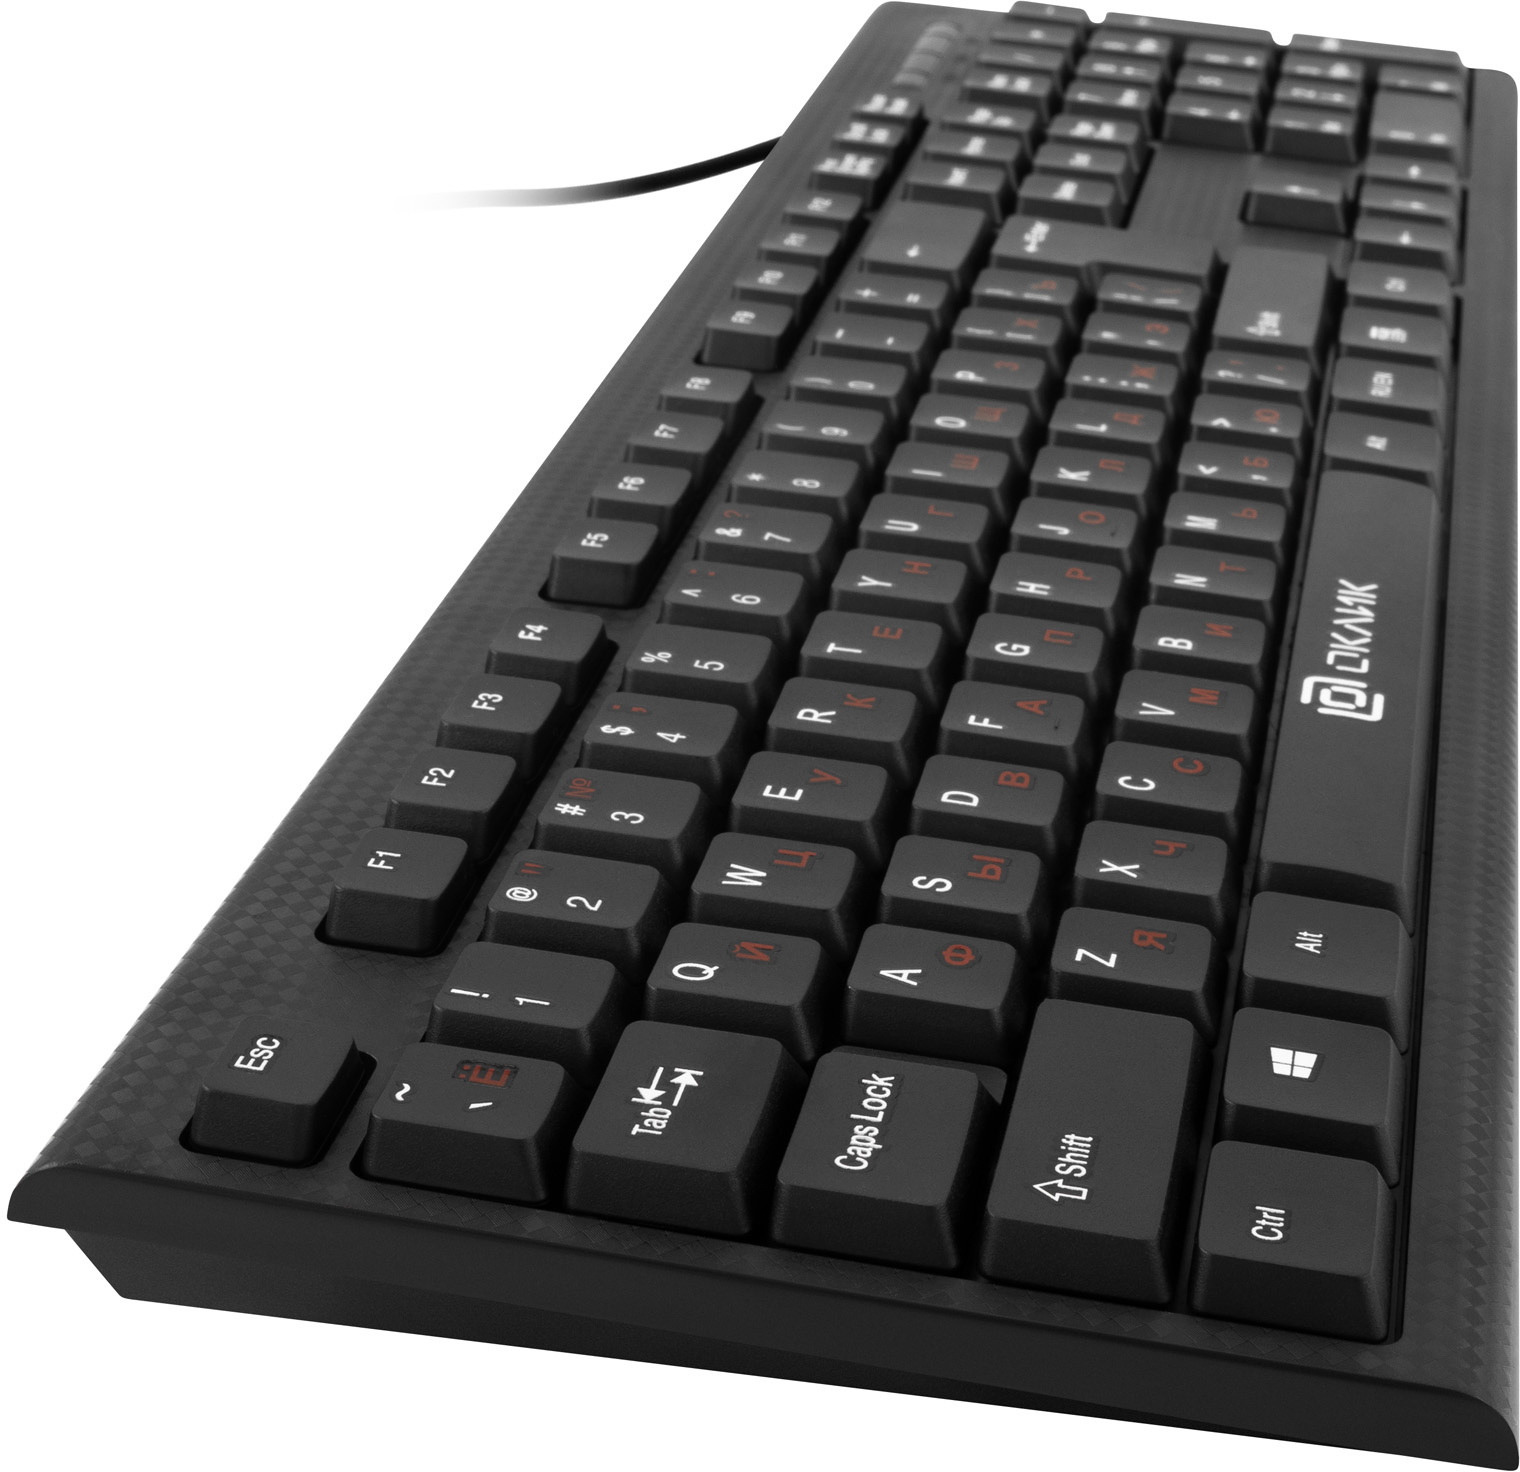 Клавиатура+мышь Oklick 620M клав:черный мышь:черный USB